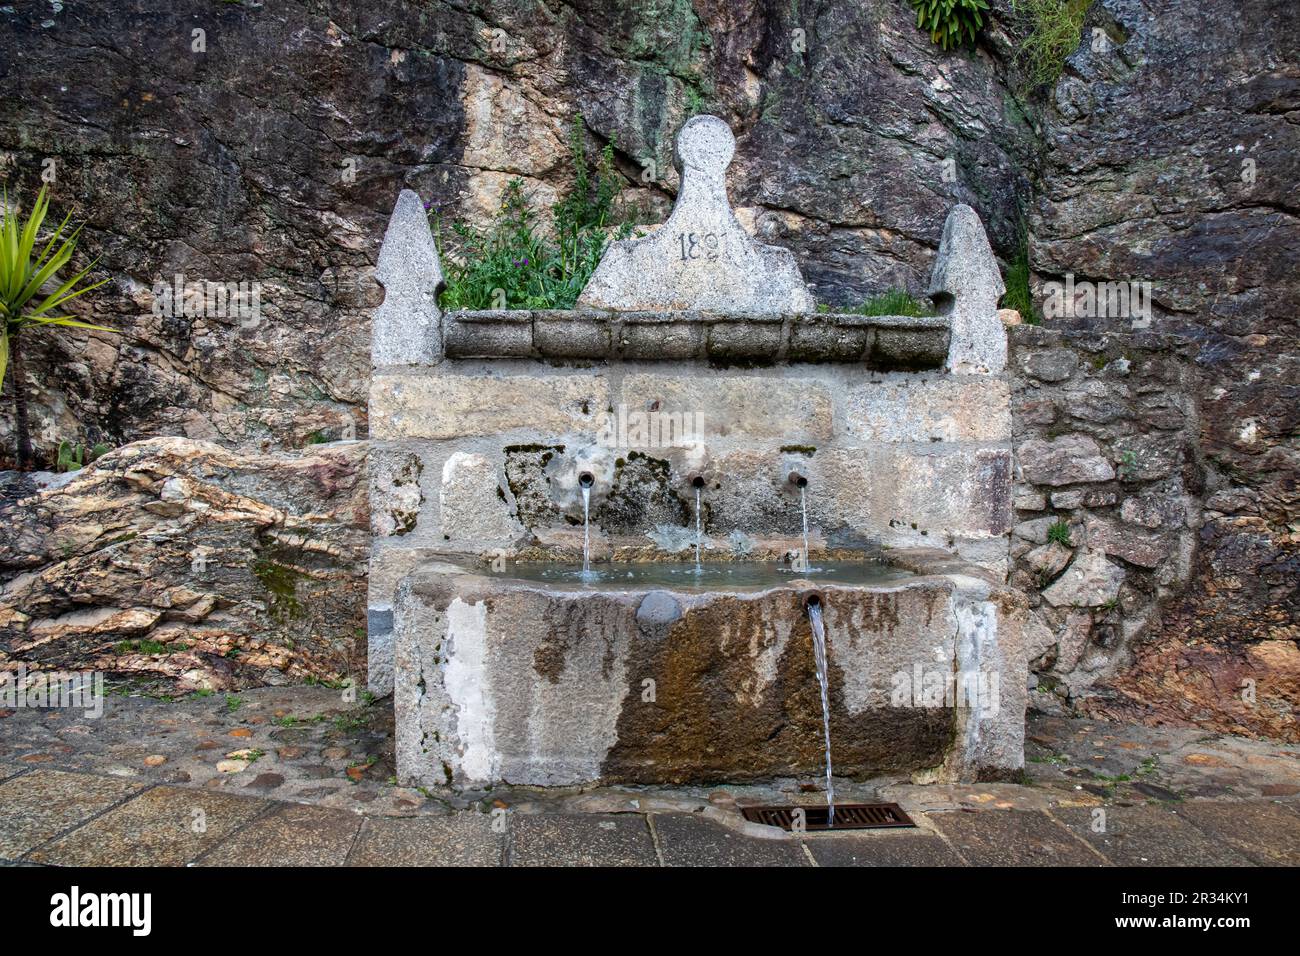 Fuente de la higuera, con tres chorros, adosada a una enorme roca, en el bonito pueblo de Cuacos de Yuste, Cáceres, España Stockfoto